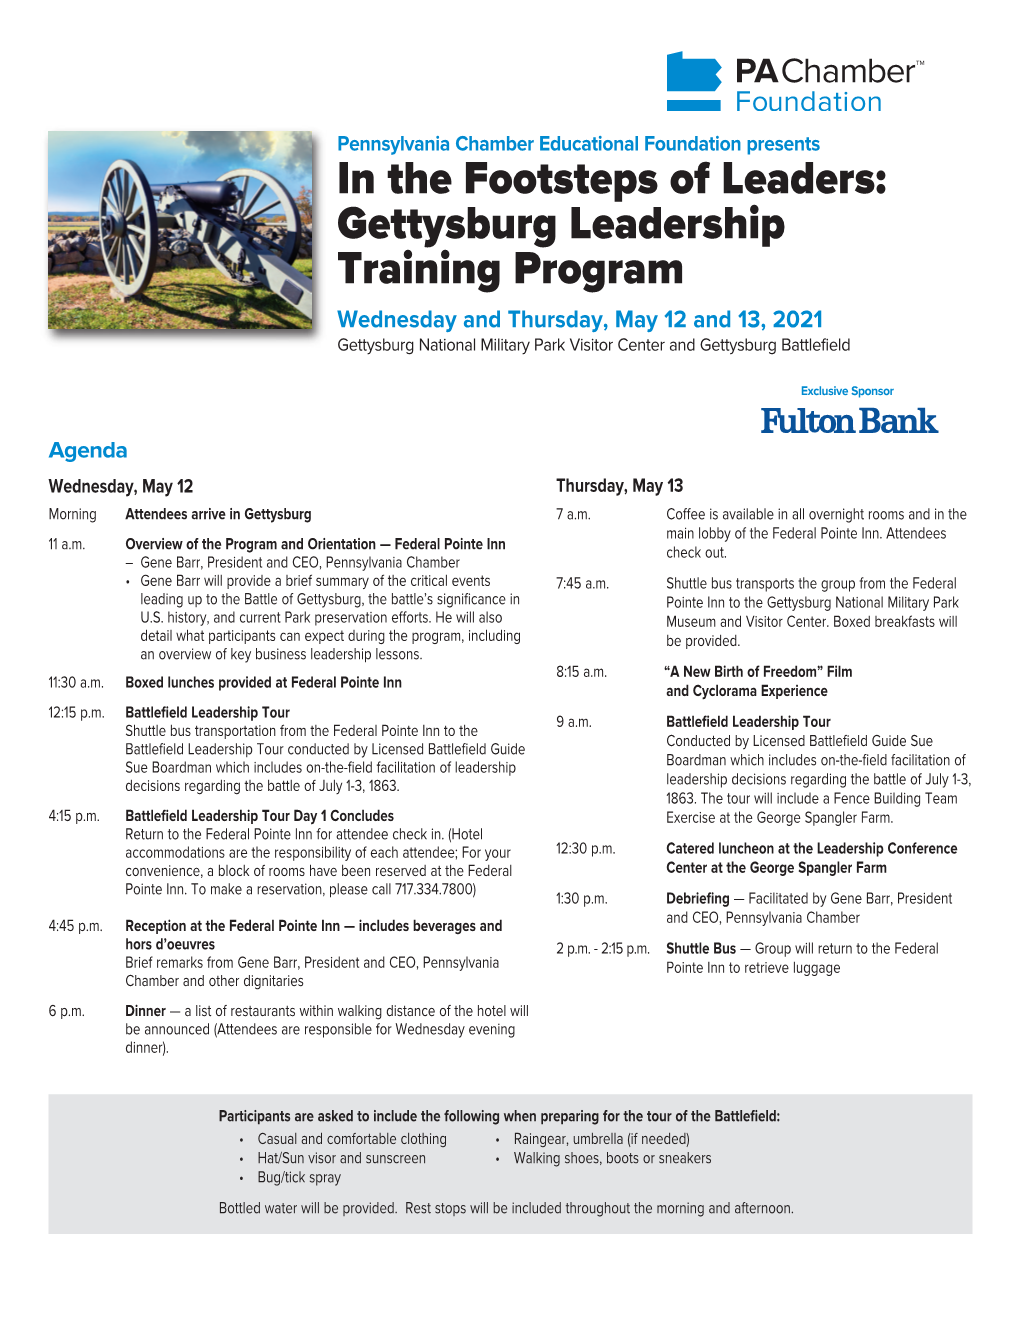 In the Footsteps of Leaders: Gettysburg Leadership